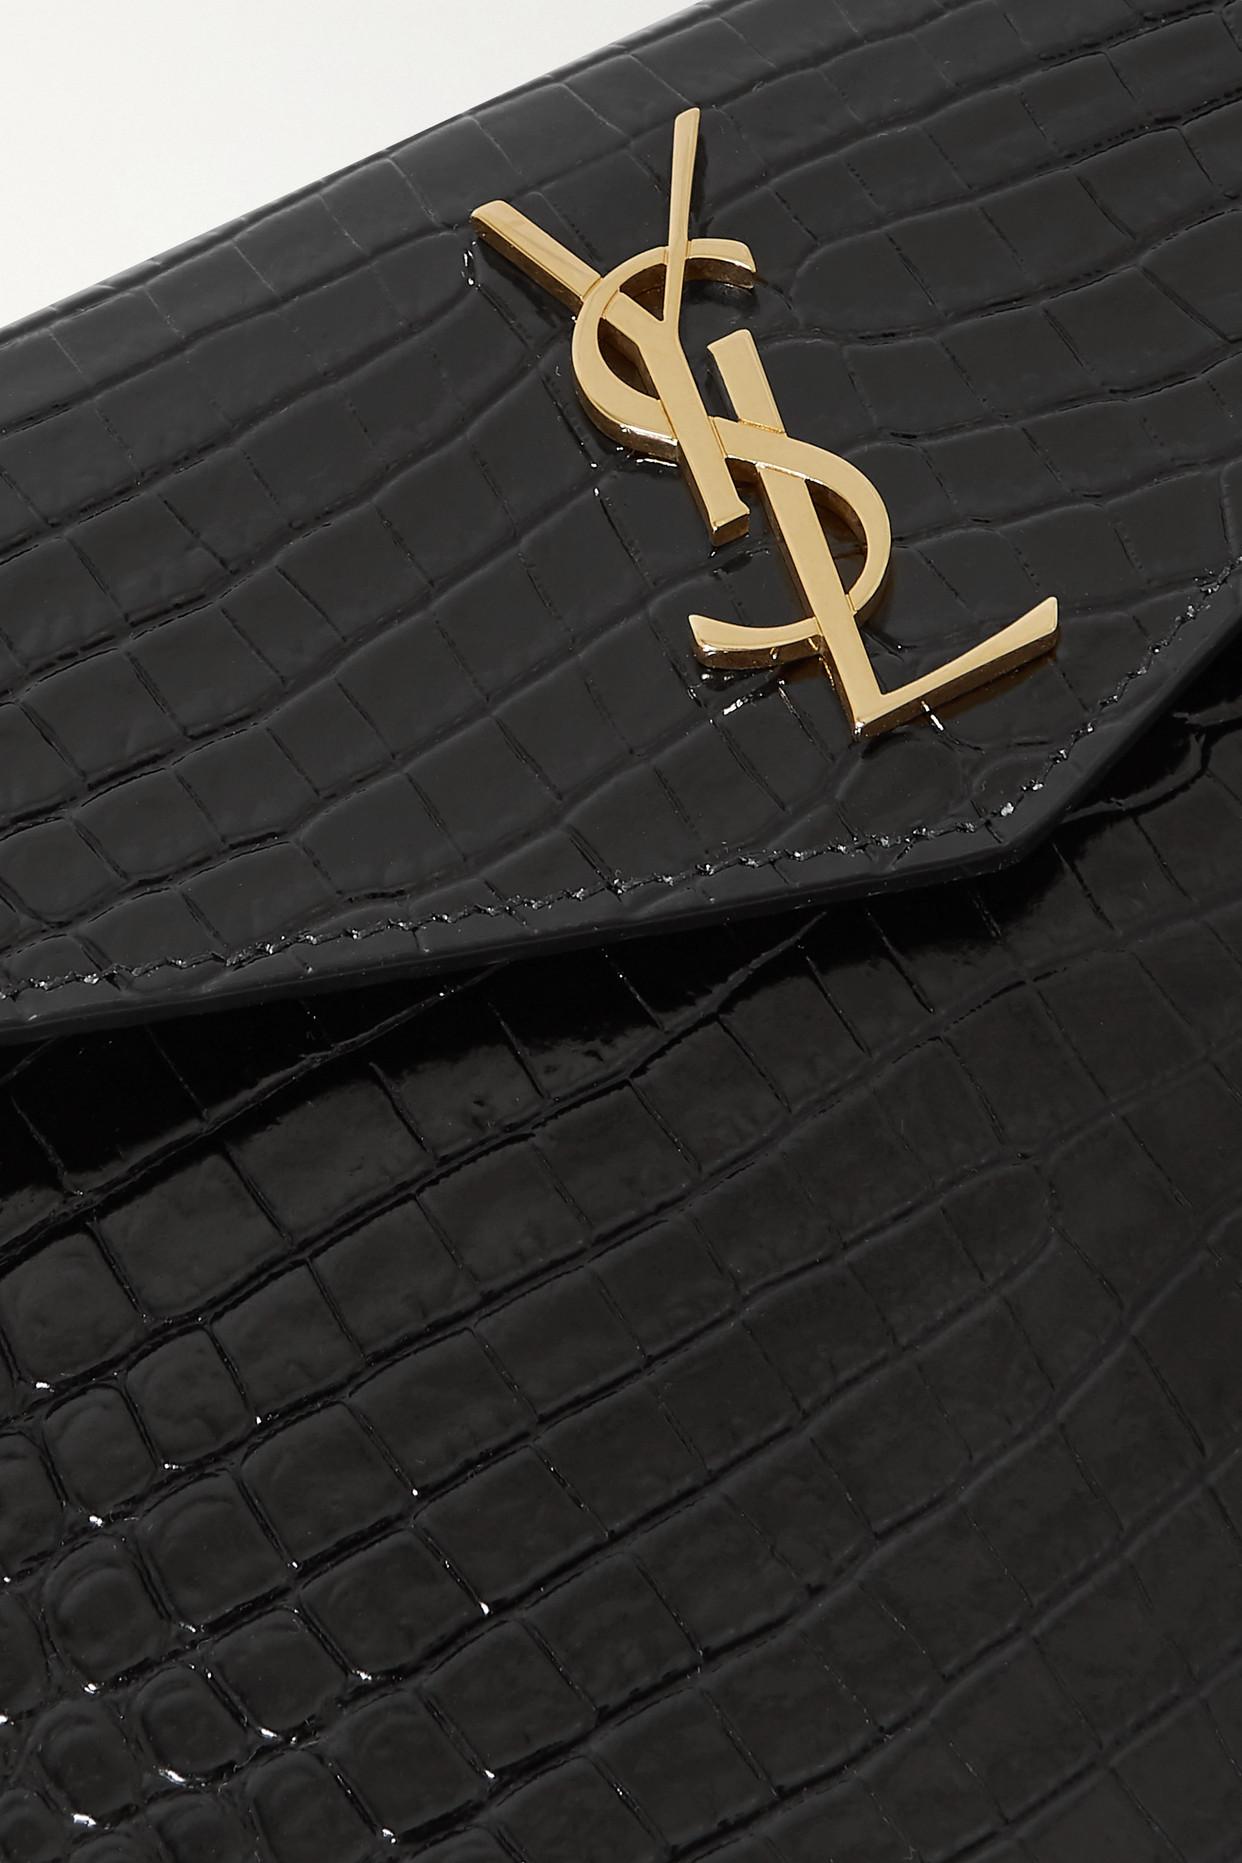 Black Uptown YSL-plaque croc-effect leather clutch bag, Saint Laurent